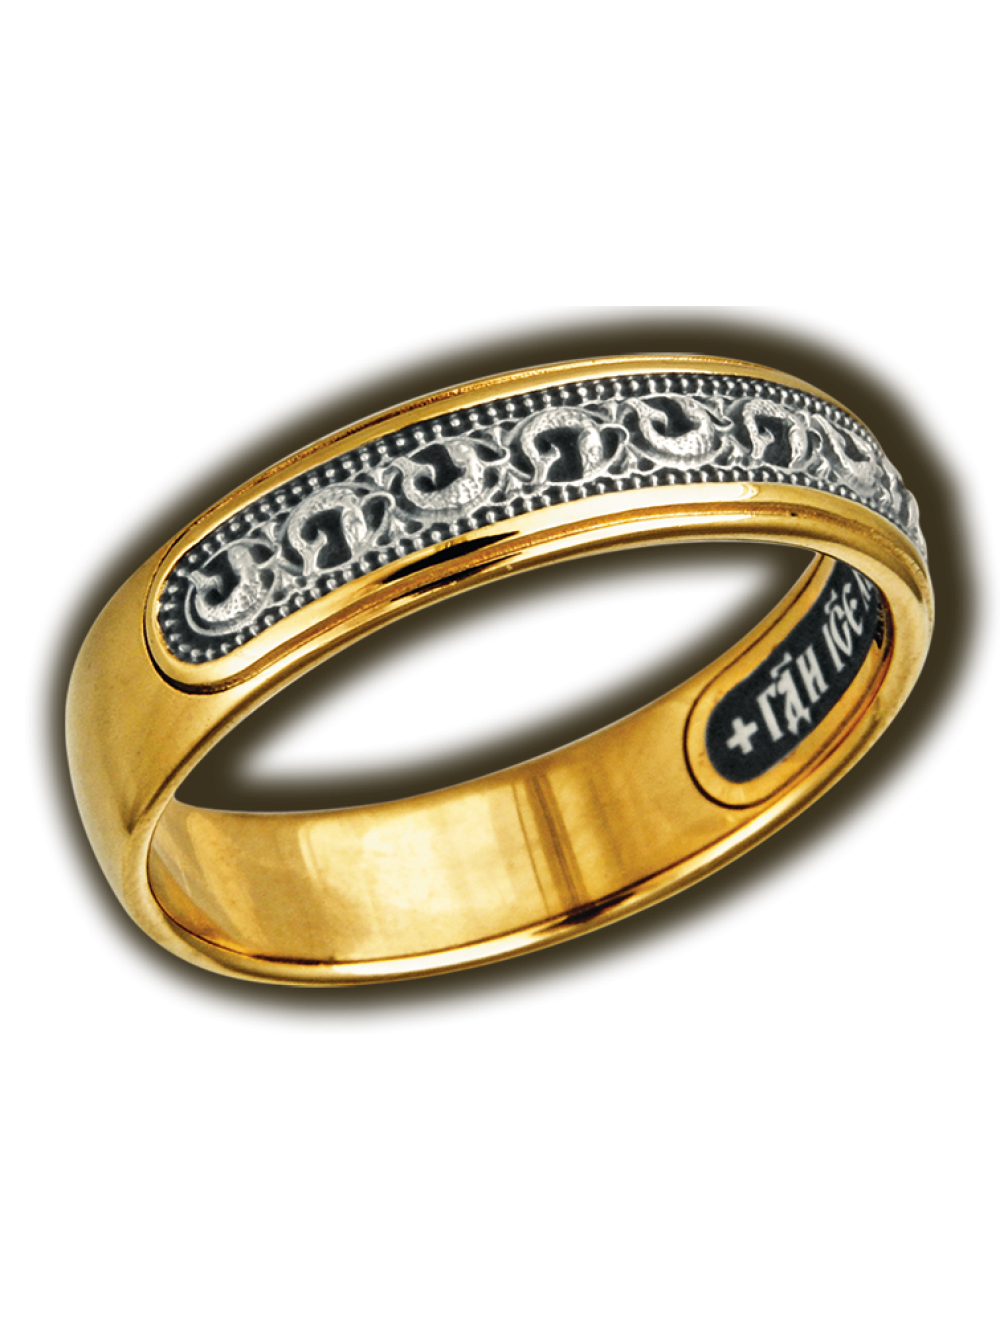 Напыление серебра золотом. Кольцо Иисусова молитва золото. Кольцо 925 пробы серебро позолоченное. Серебряное кольцо с Иисусовой молитвой.